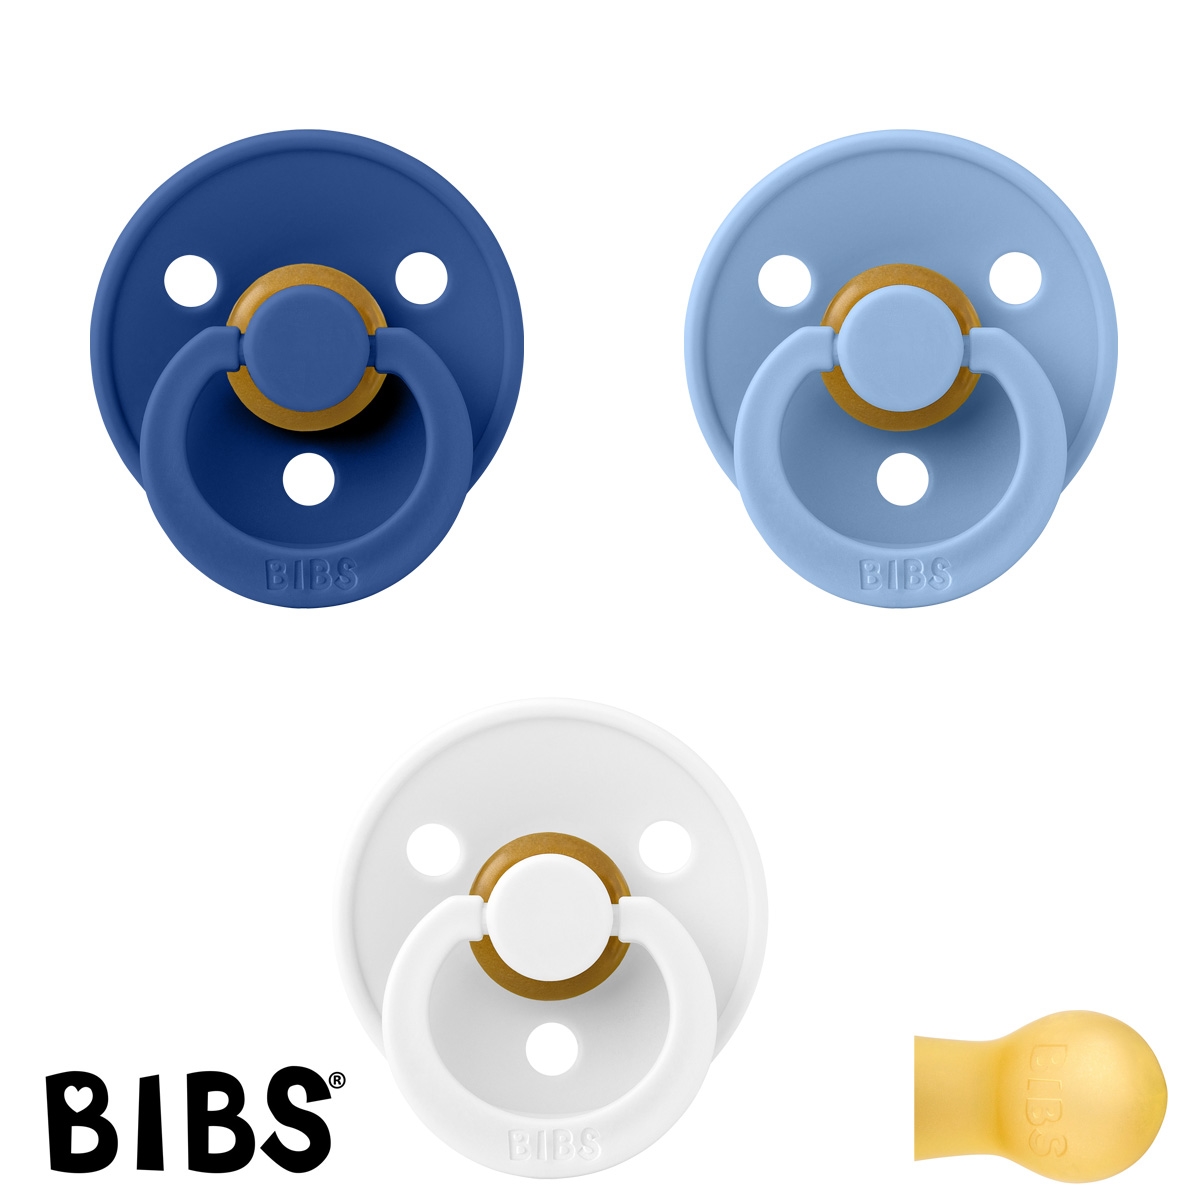 BIBS Colour Sutter med navn str2, 1 Cornflower, 1 White, 1 SkyBlue Runde latex, Pakke med 3 sutter